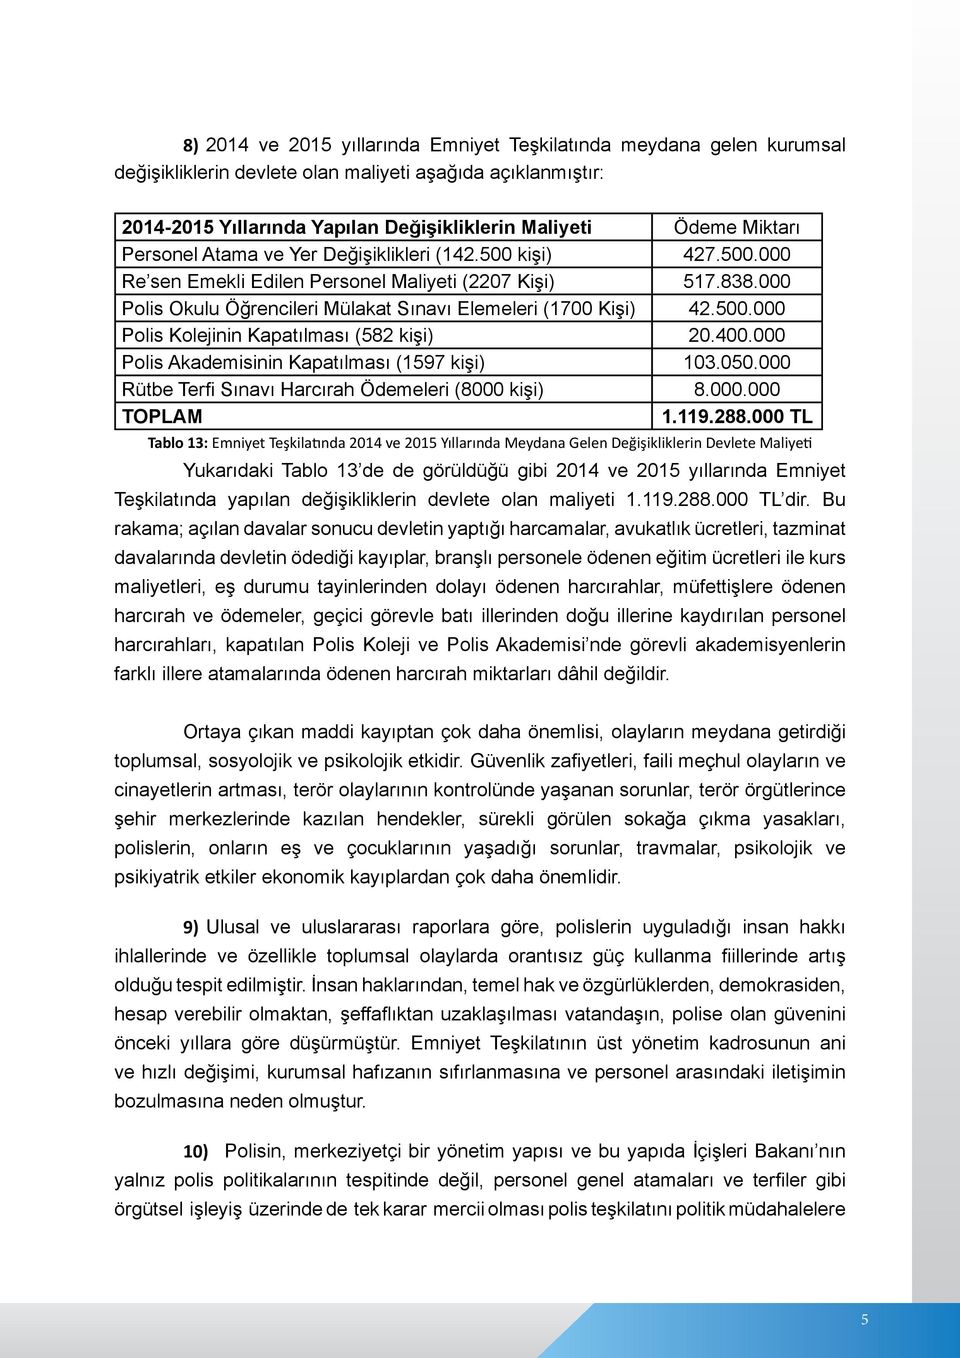 400.000 Polis Akademisinin Kapatılması (1597 kişi) 103.050.000 Rütbe Terfi Sınavı Harcırah Ödemeleri (8000 kişi) 8.000.000 TOPLAM 1.119.288.